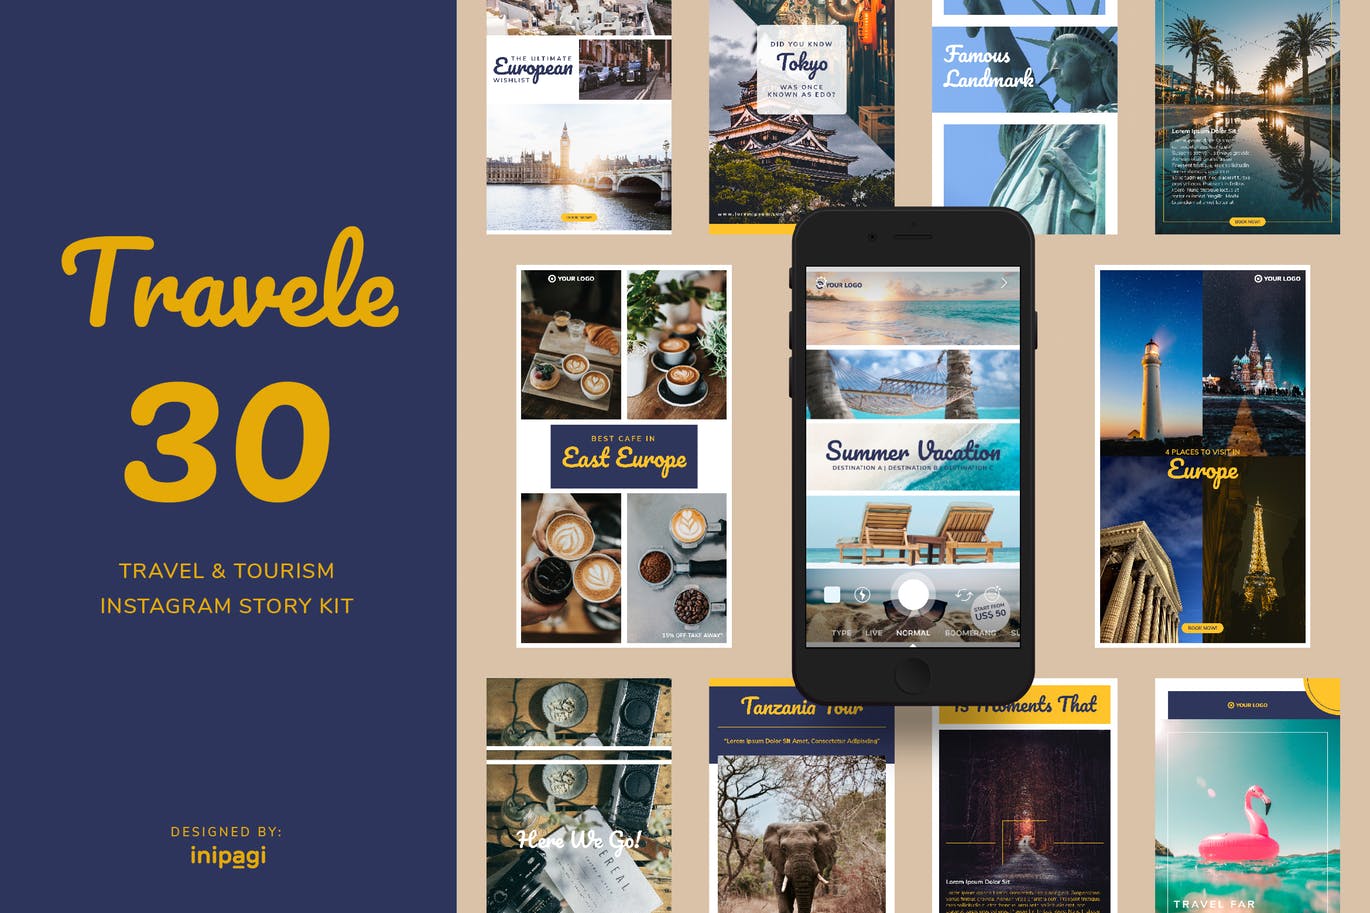 旅行旅游品牌推广Instagram设计素材包 TRAVELE – Instagram Story Kit插图